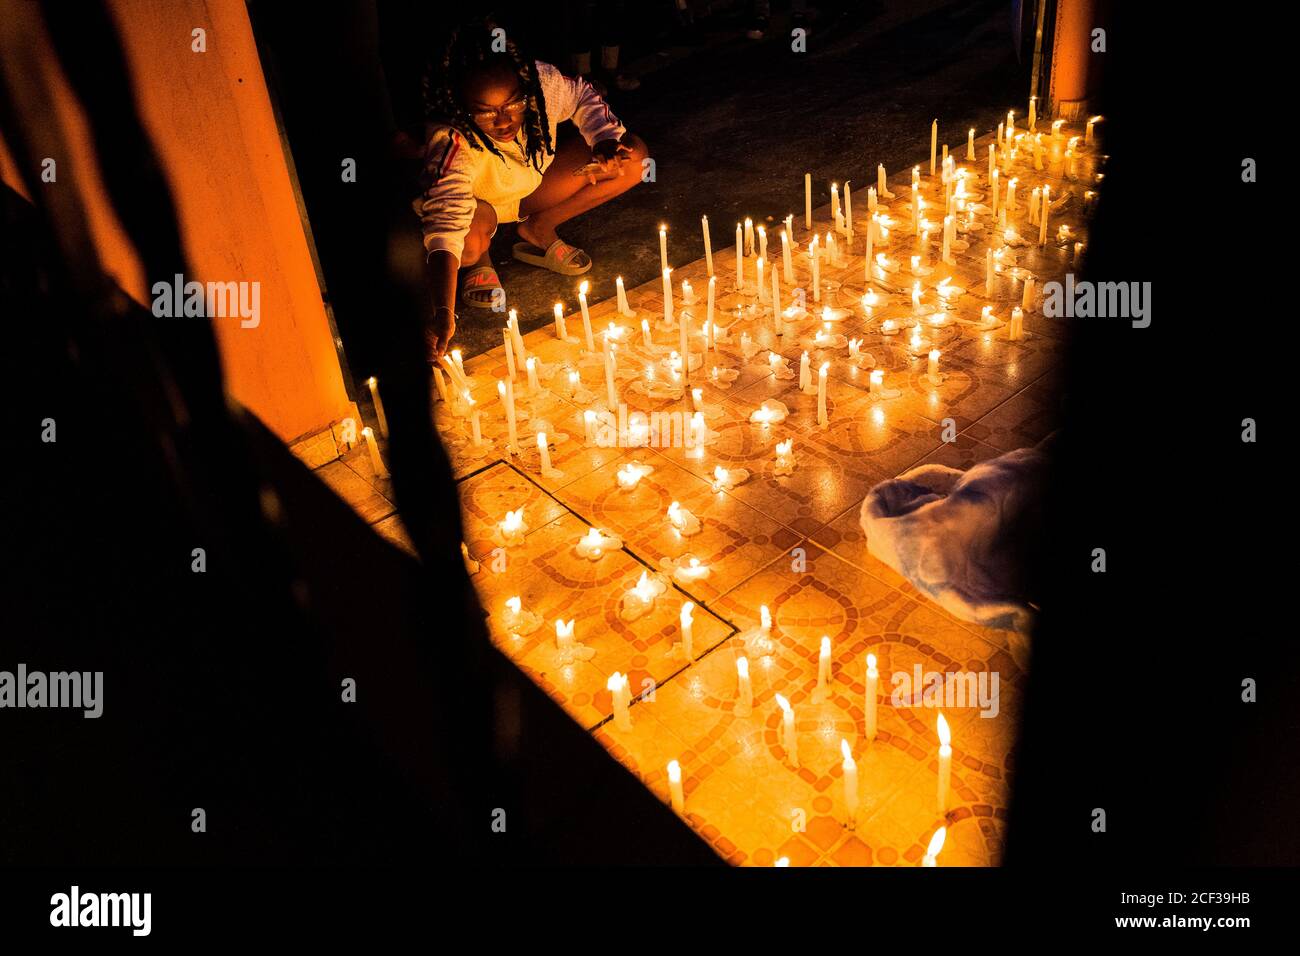 Un seguace cattolico afro-colombiano accende una candela mentre partecipa a una processione religiosa durante il festival di San Pacho a Quibdó, Colombia. Foto Stock